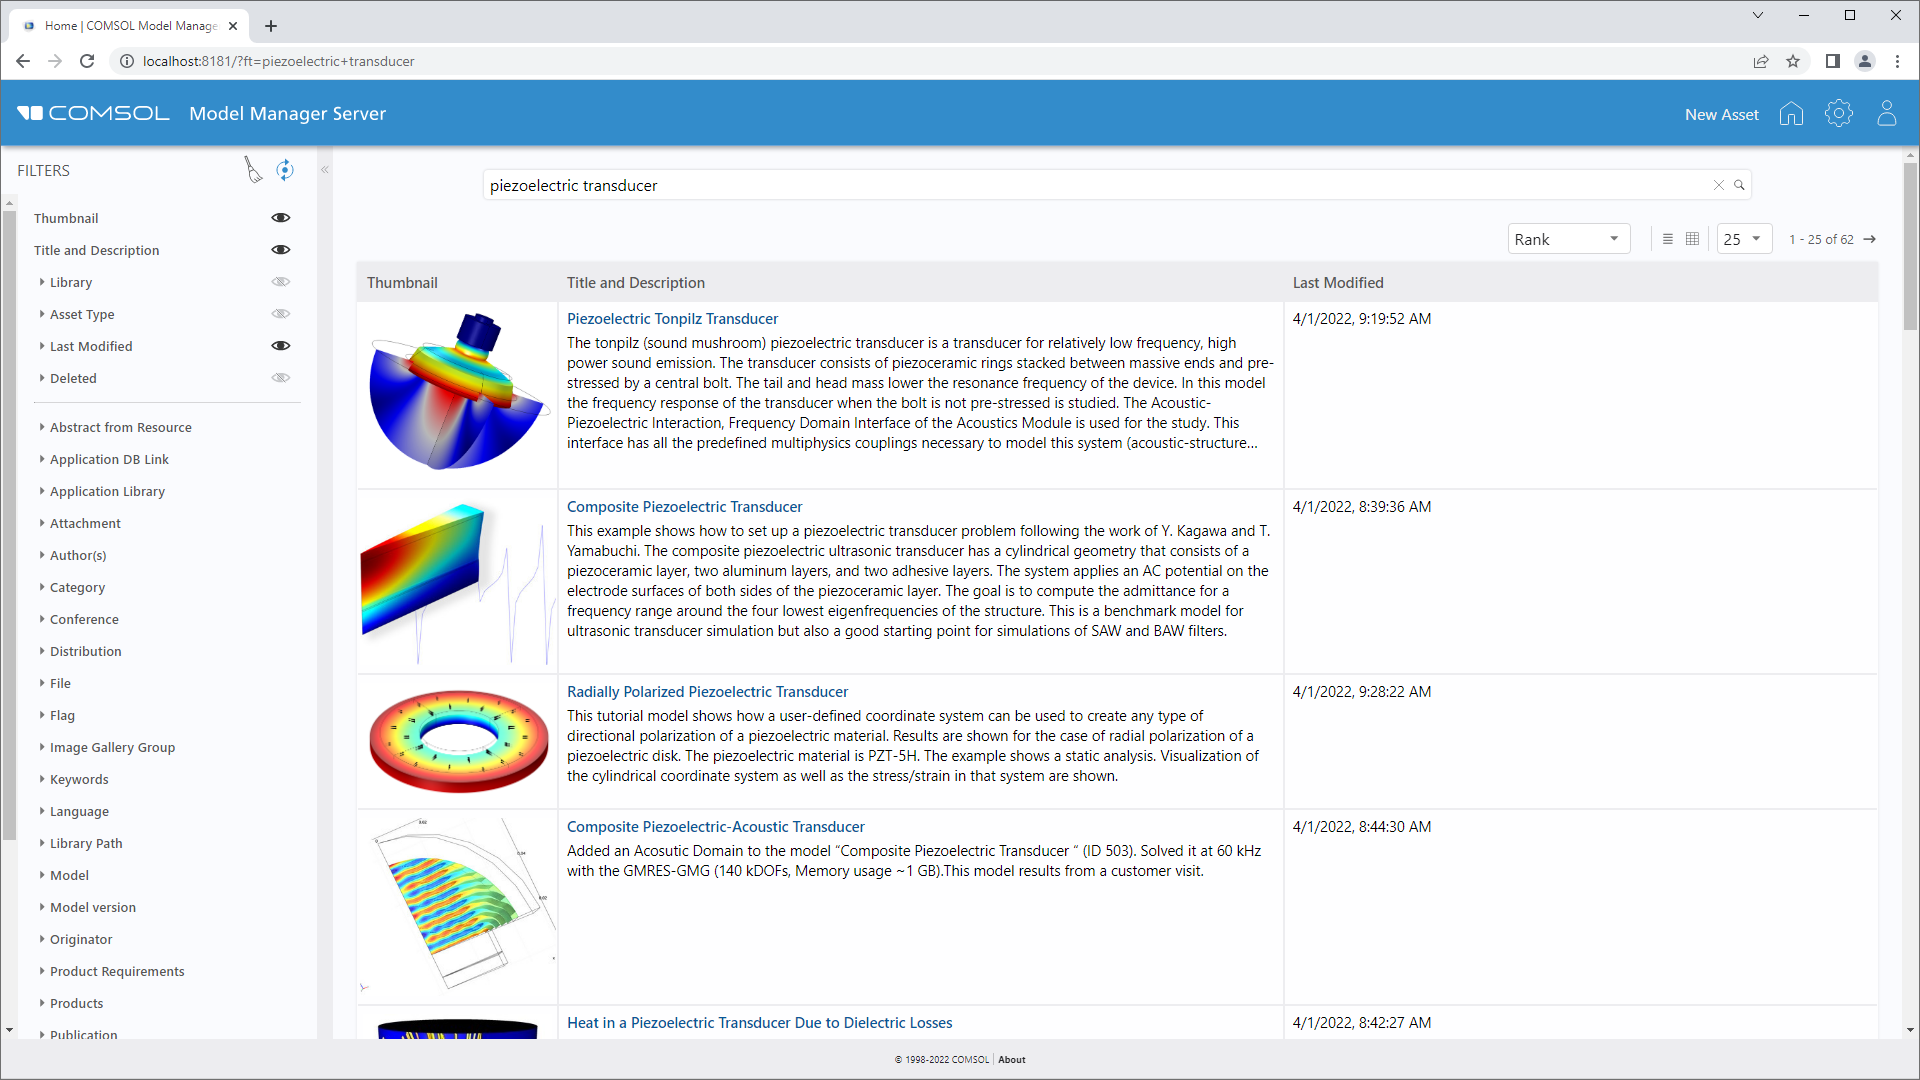 L'interfaccia web del Model Manager server per la gestione delle risorse relative ai progetti di modellazione e simulazione.